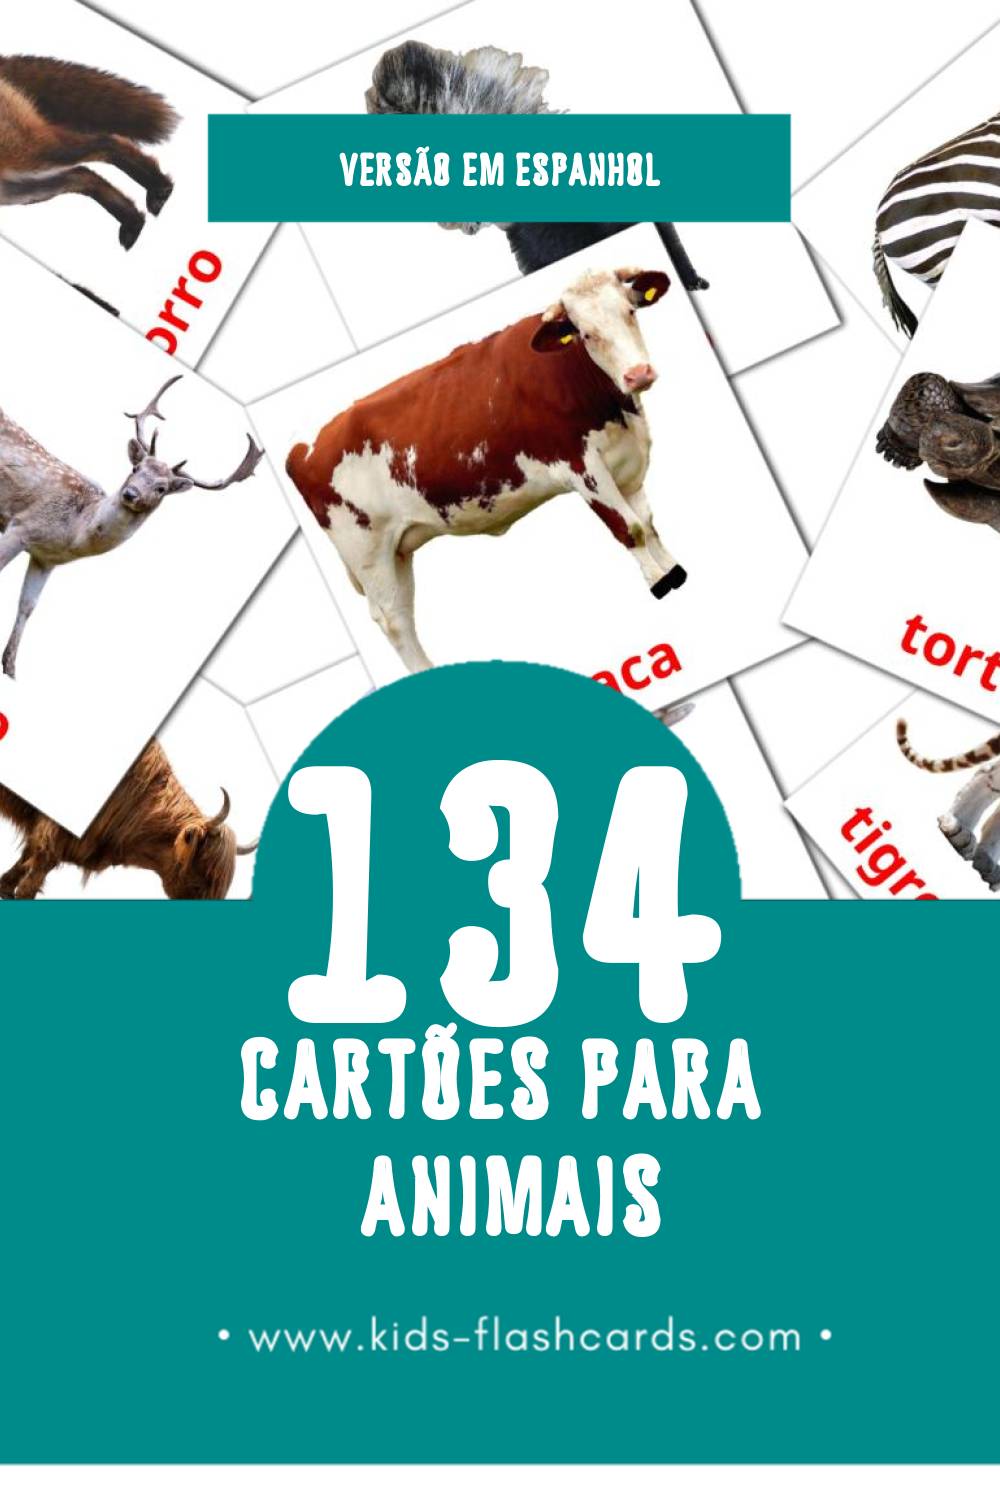 Flashcards de Animales Visuais para Toddlers (134 cartões em Espanhol)